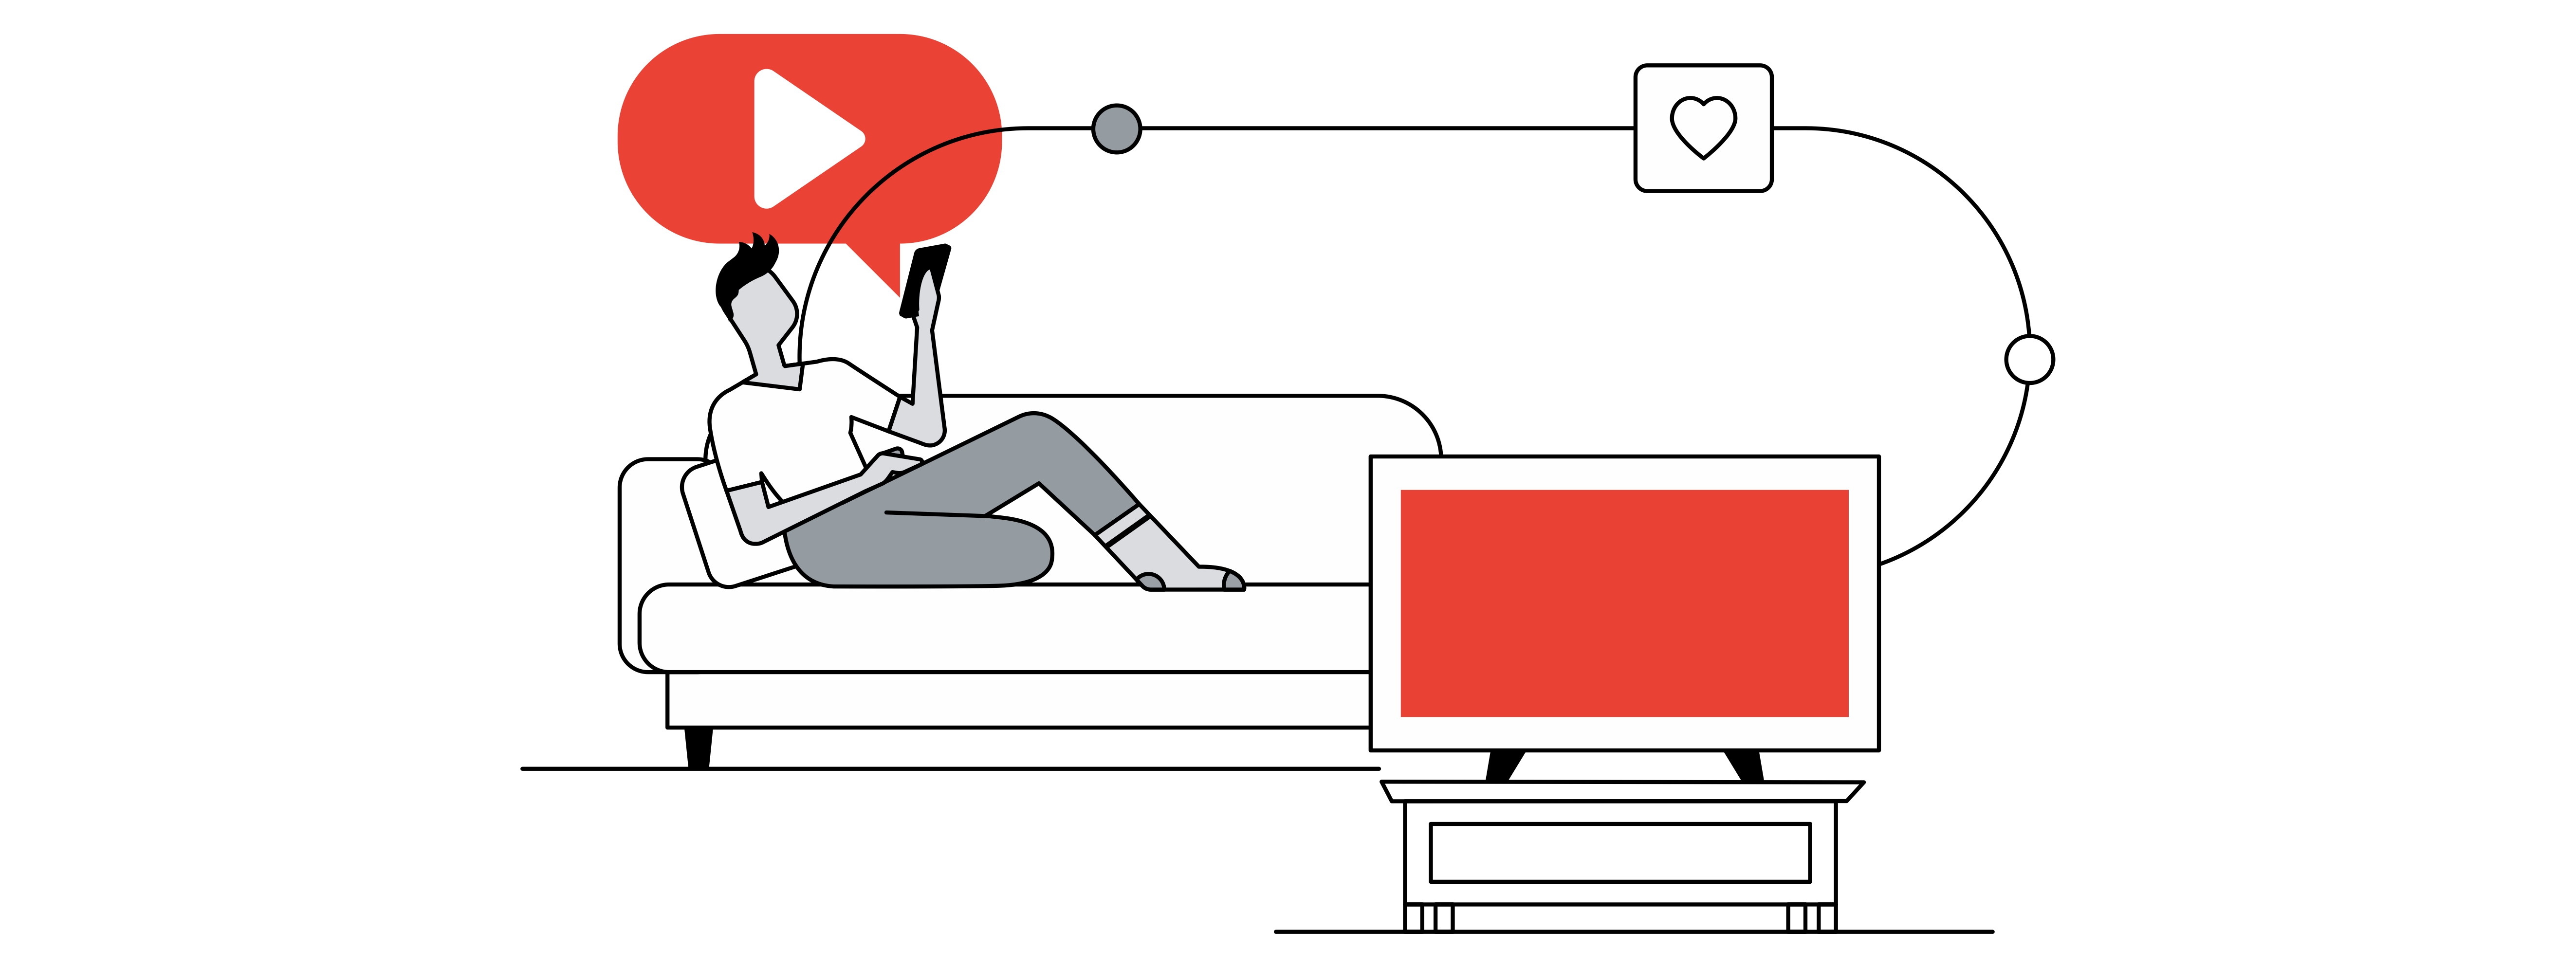 Una persona acostada en un sofá mira el móvil que tiene en su mano. De él sale un globo de diálogo con fondo rojo y el logo de YouTube en blanco. Una línea lo conecta con un televisor.